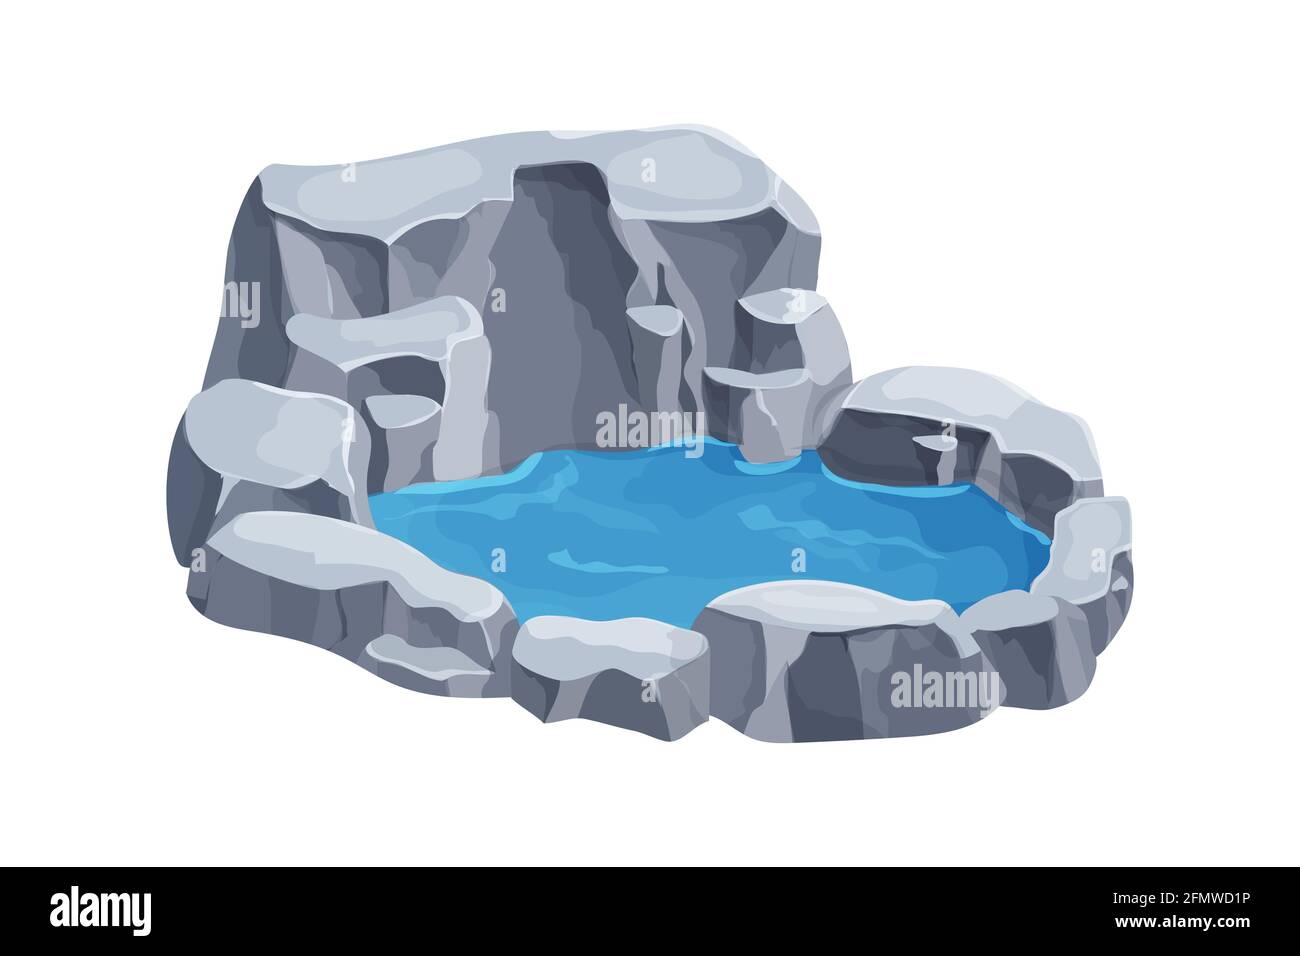 Teich mit Wasser und Steinen, Natur- oder Gartendekoration im Cartoon-Stil isoliert auf weißem Hintergrund. UI-Spiel Asset, Park Pool, See. Vektor illustrr Stock Vektor